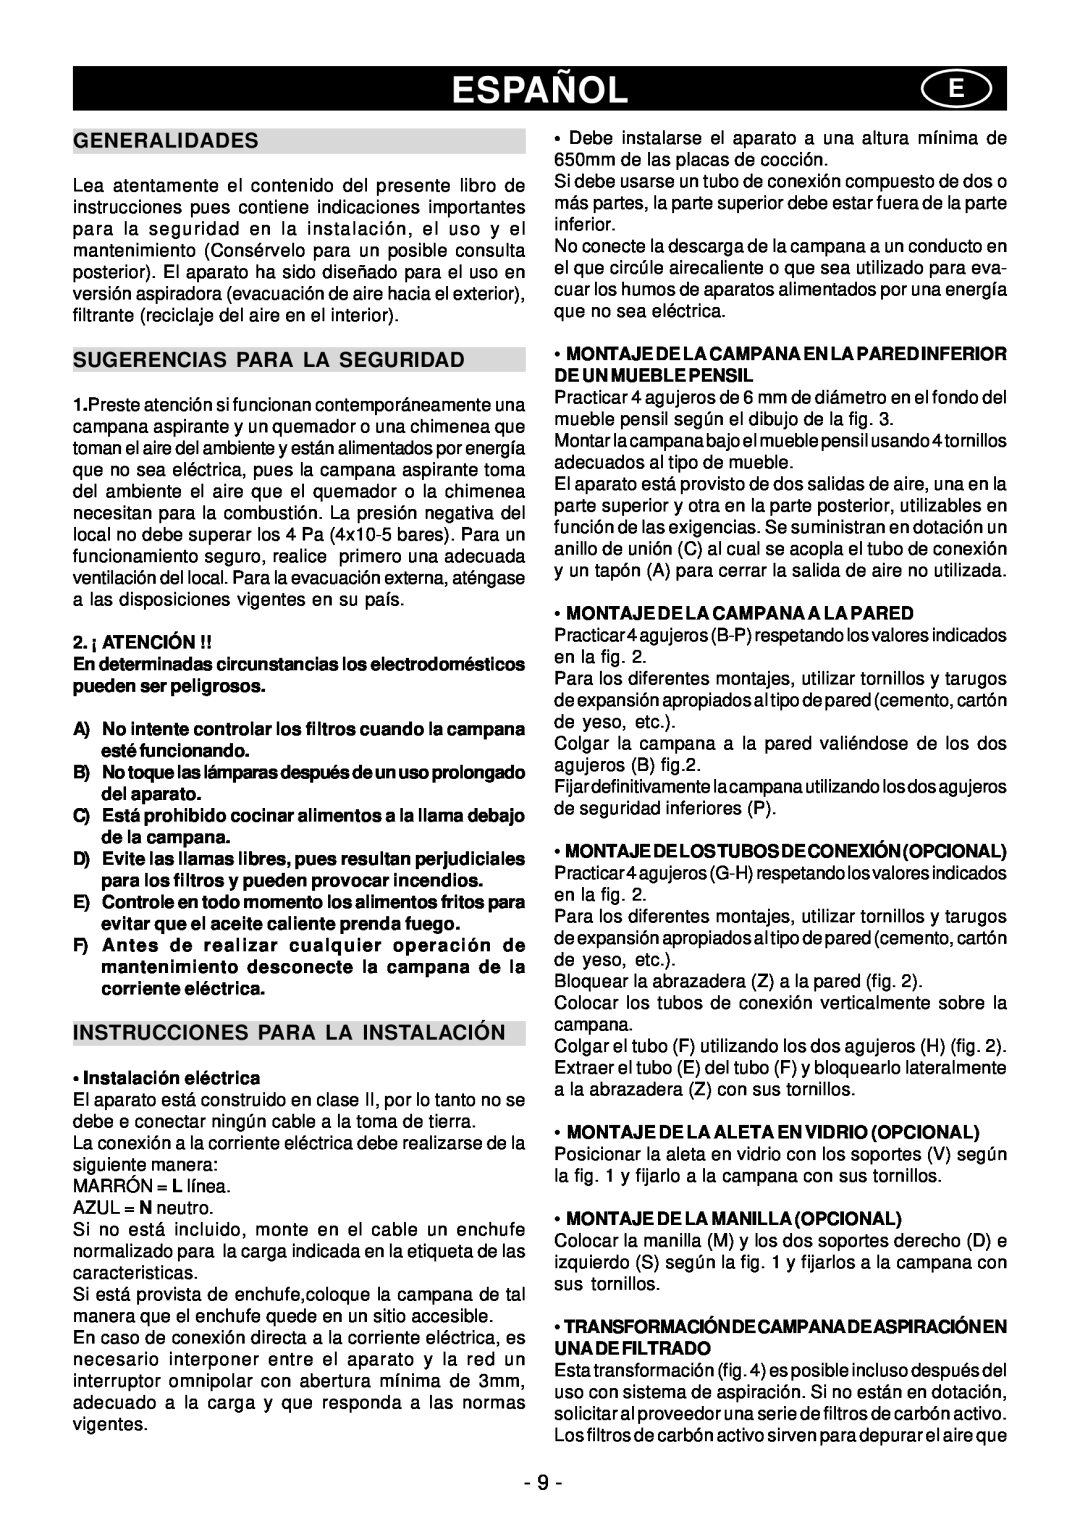 Elitair PN-36 manual Españole, Generalidades, Sugerencias Para La Seguridad, Instrucciones Para La Instalación 